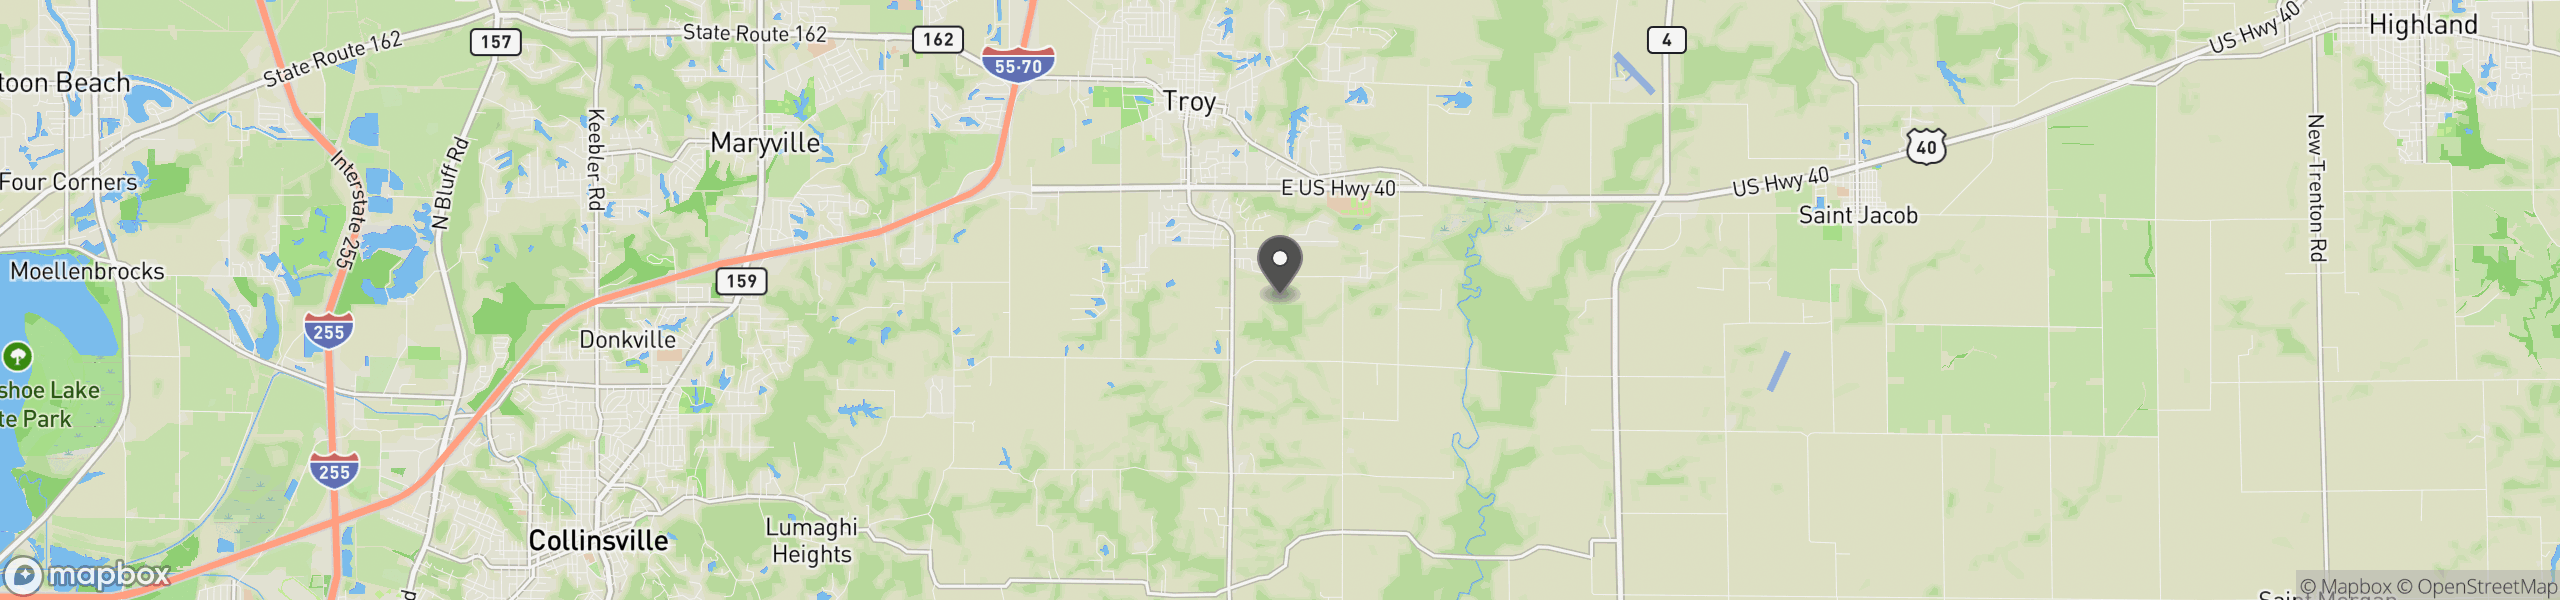 Troy, IL 62294